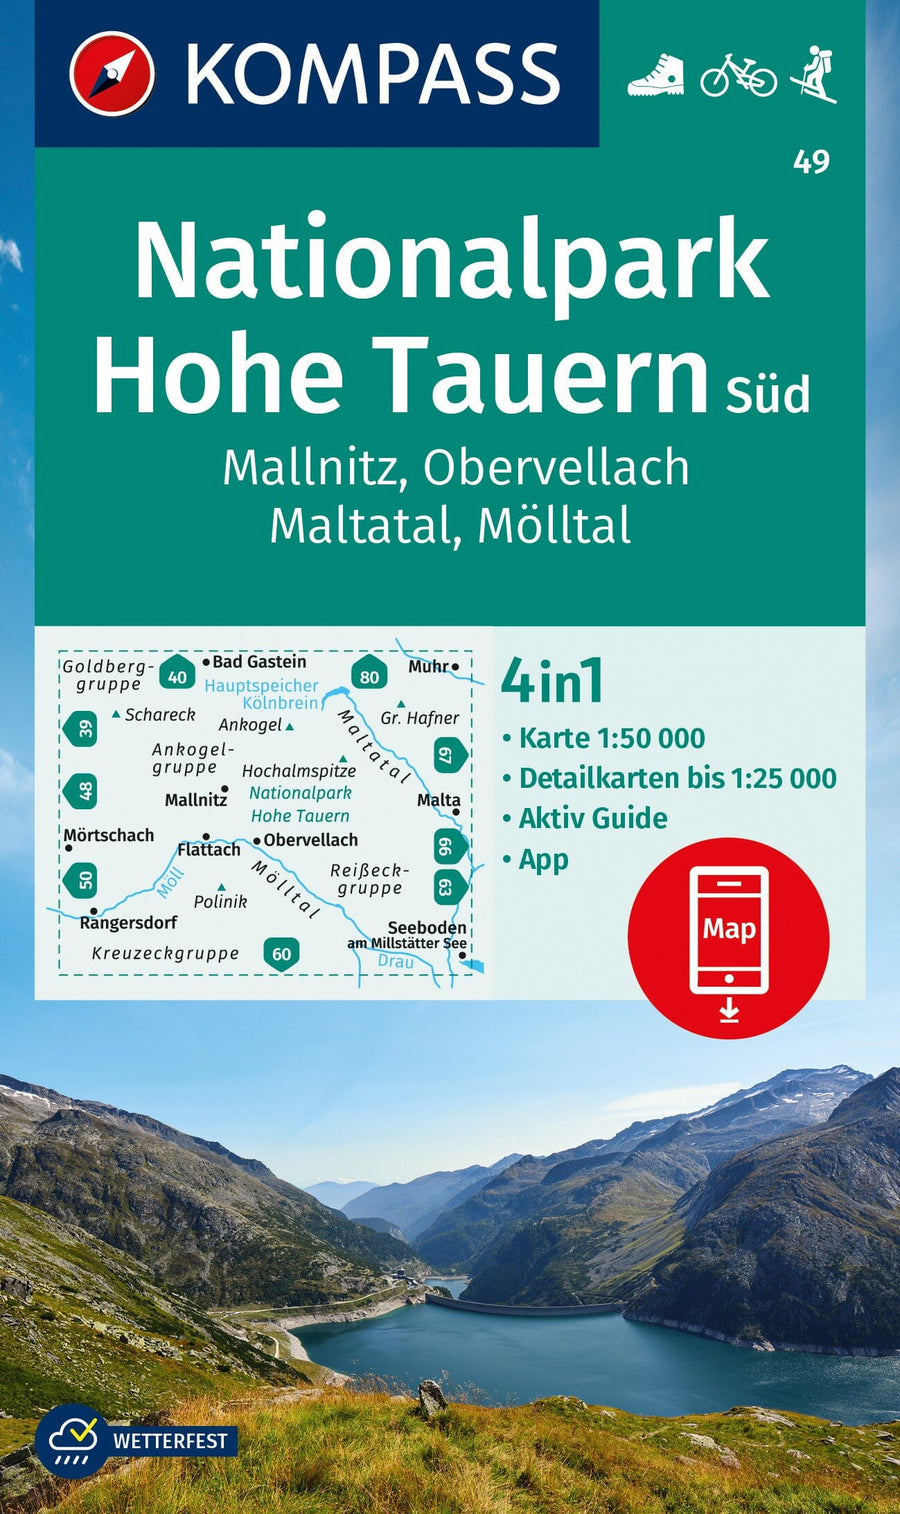 Carte de randonnée n° 49 - Hohe Tauern Sud National Park (Autriche) | Kompass carte pliée Kompass 